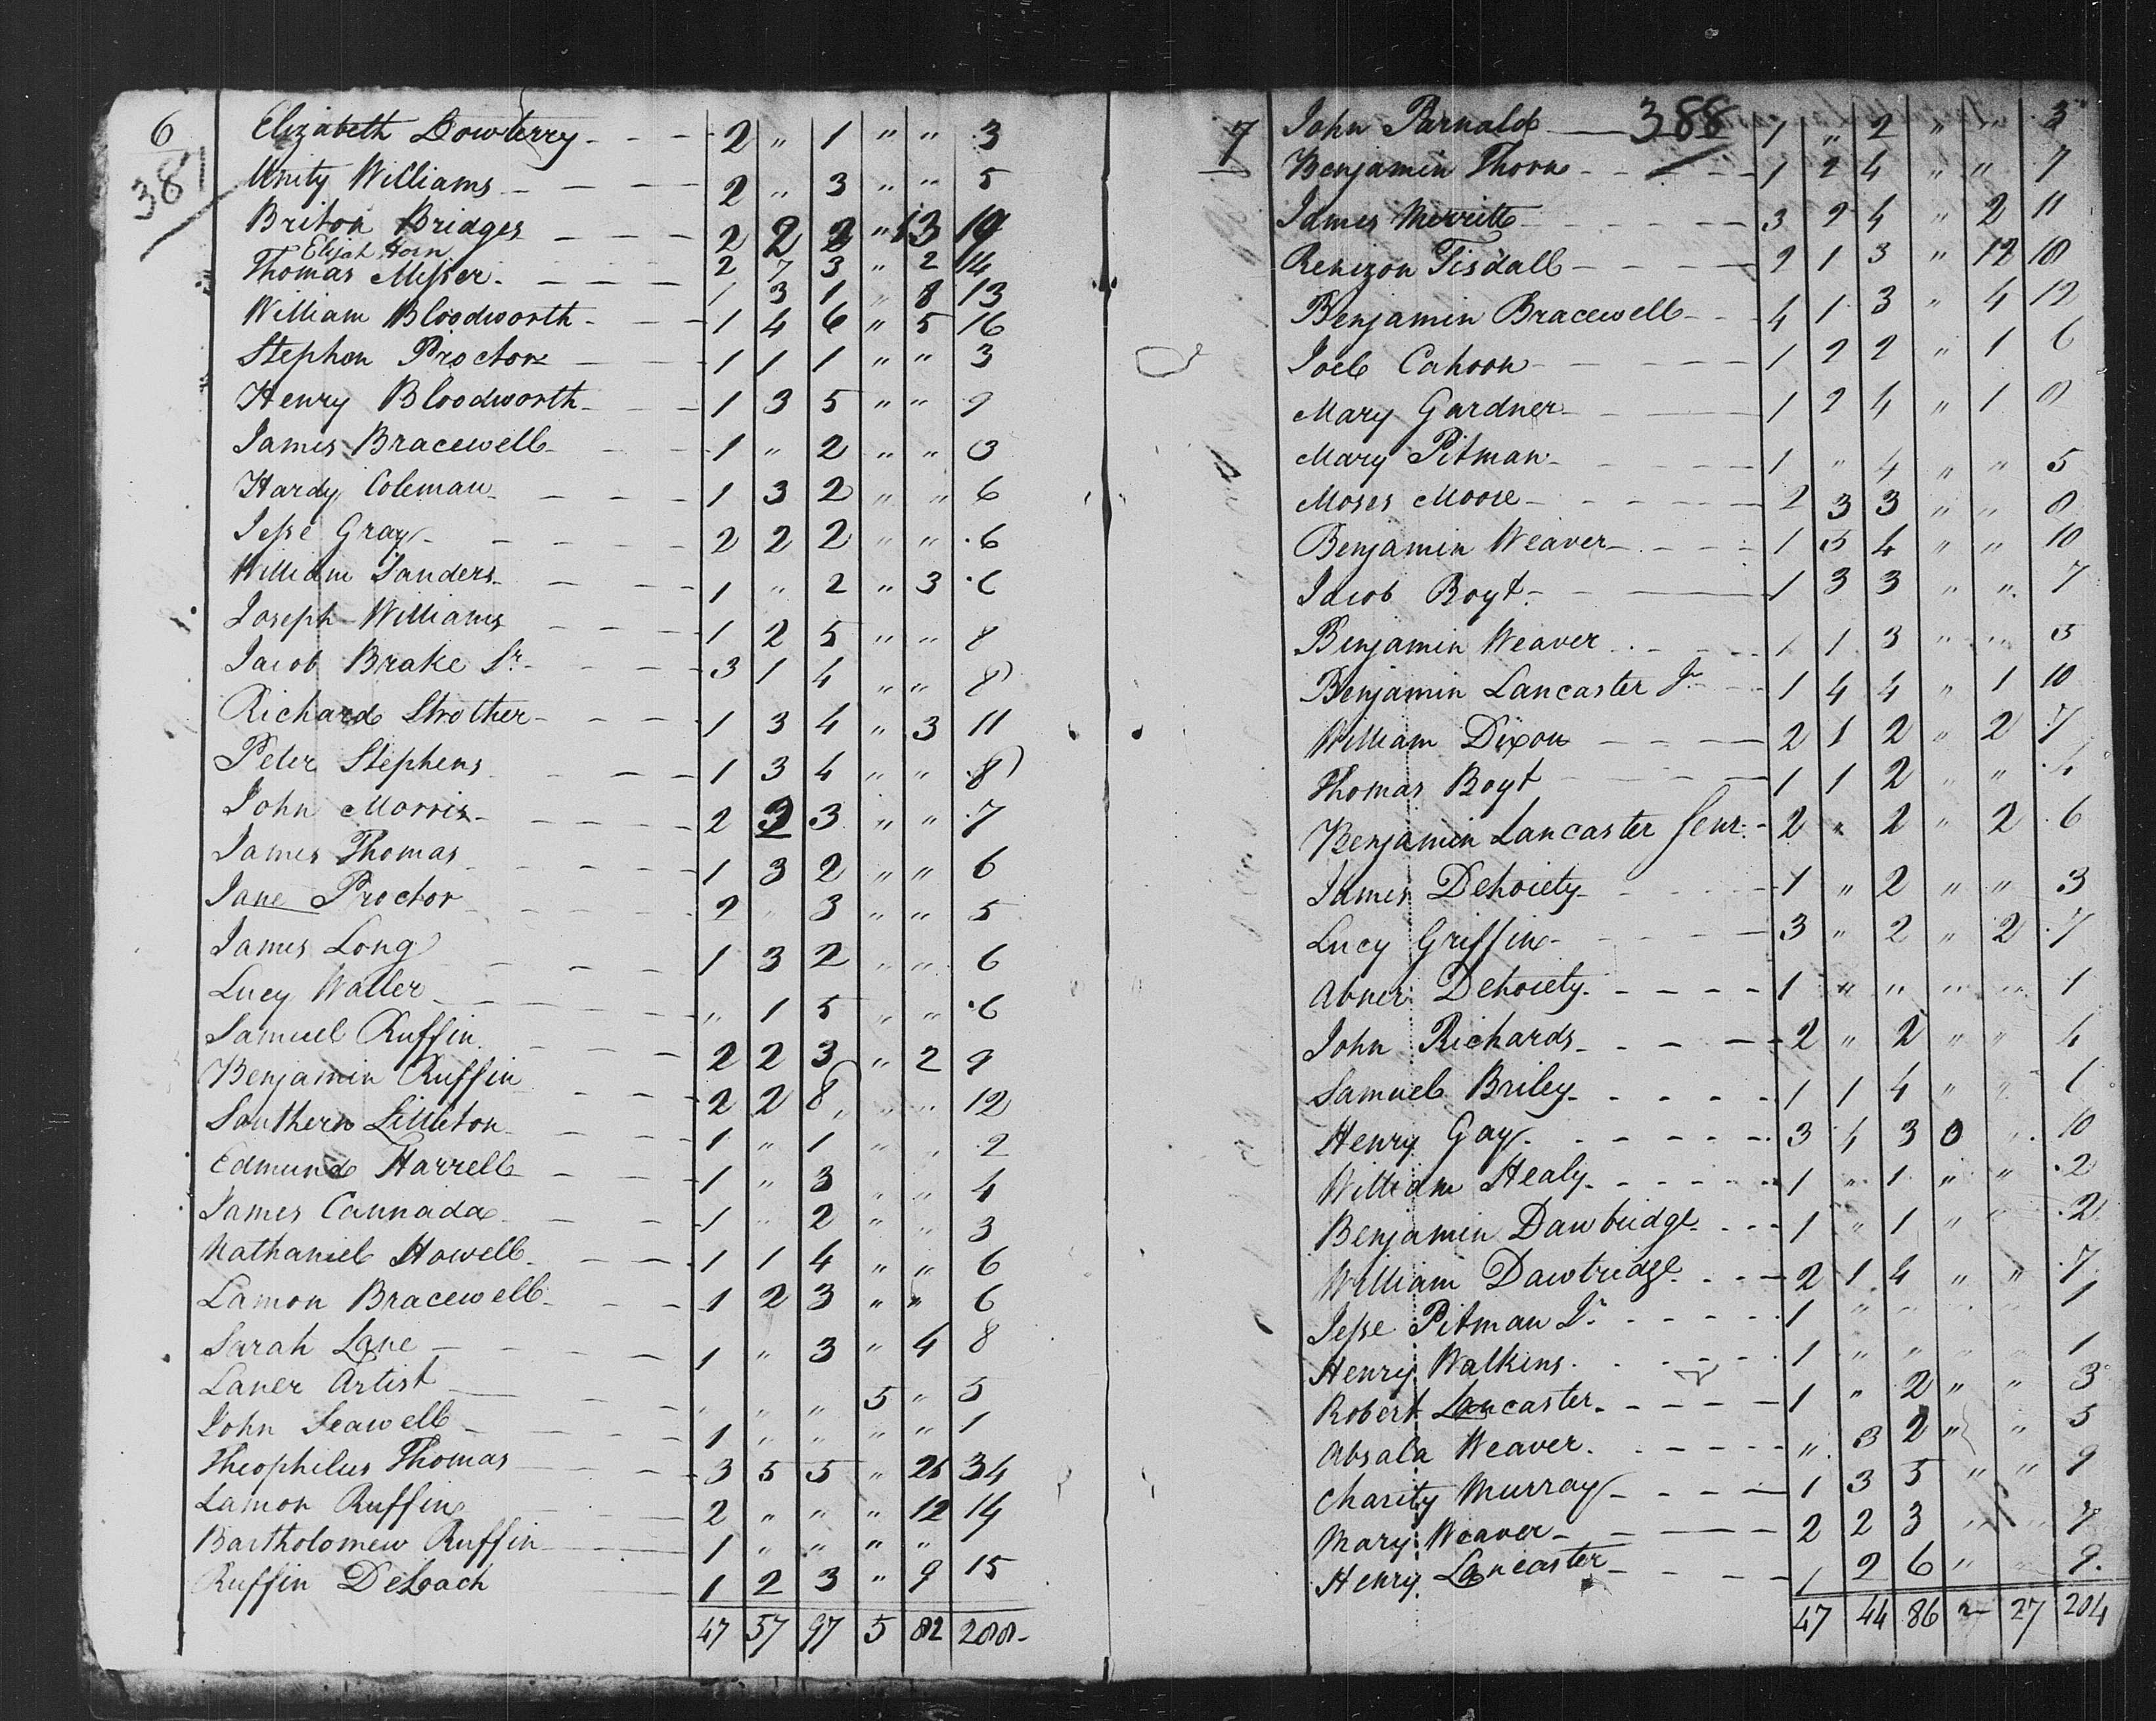 Theophilus Thomas census record.